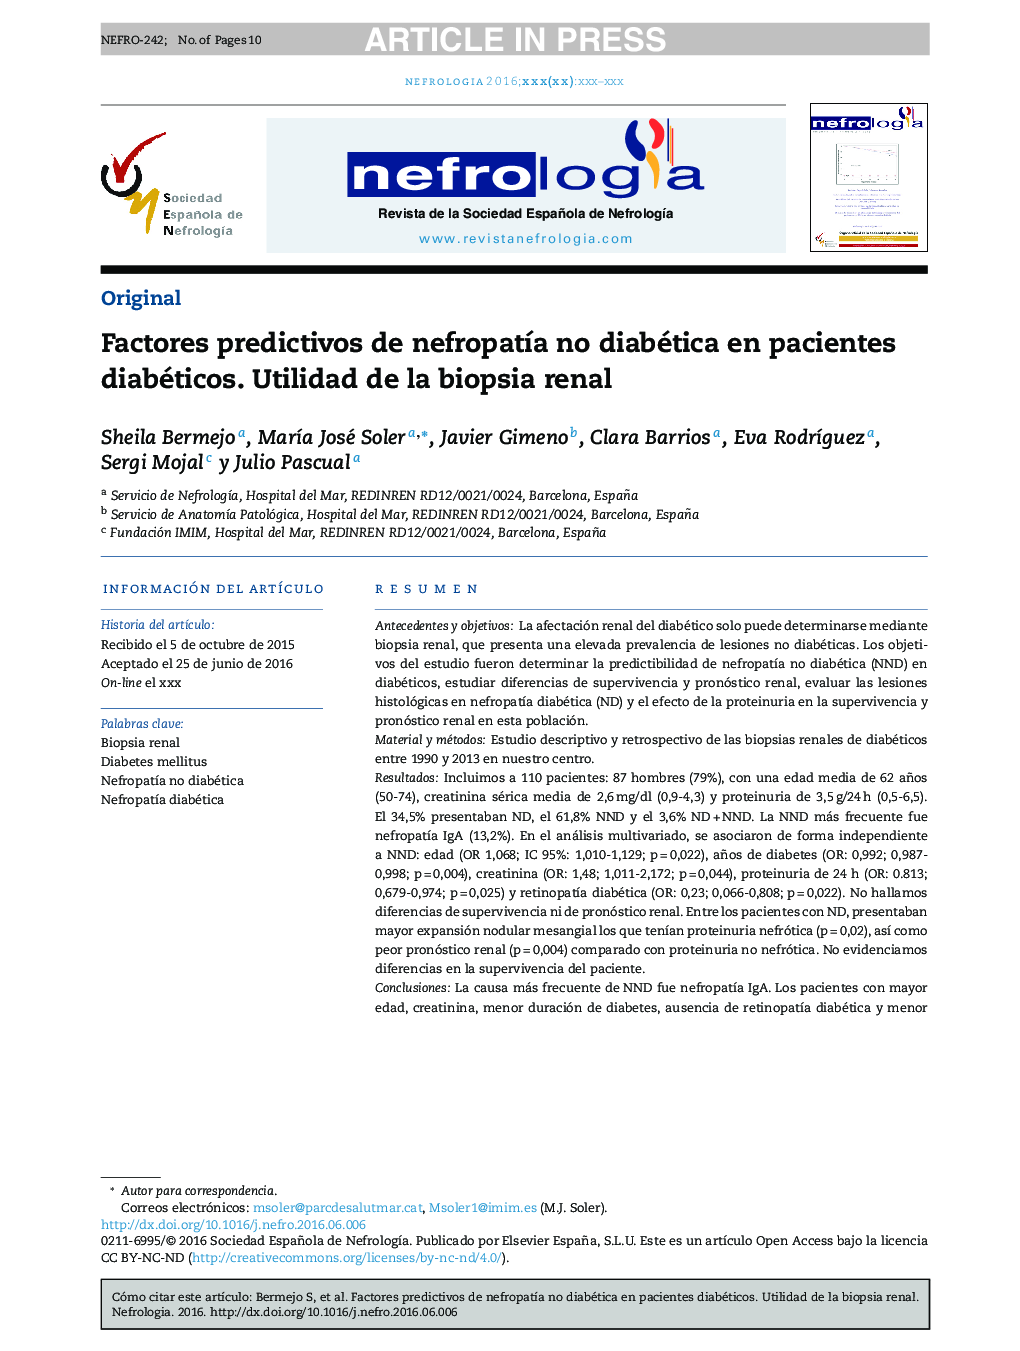 Factores predictivos de nefropatÃ­a no diabética en pacientes diabéticos. Utilidad de la biopsia renal